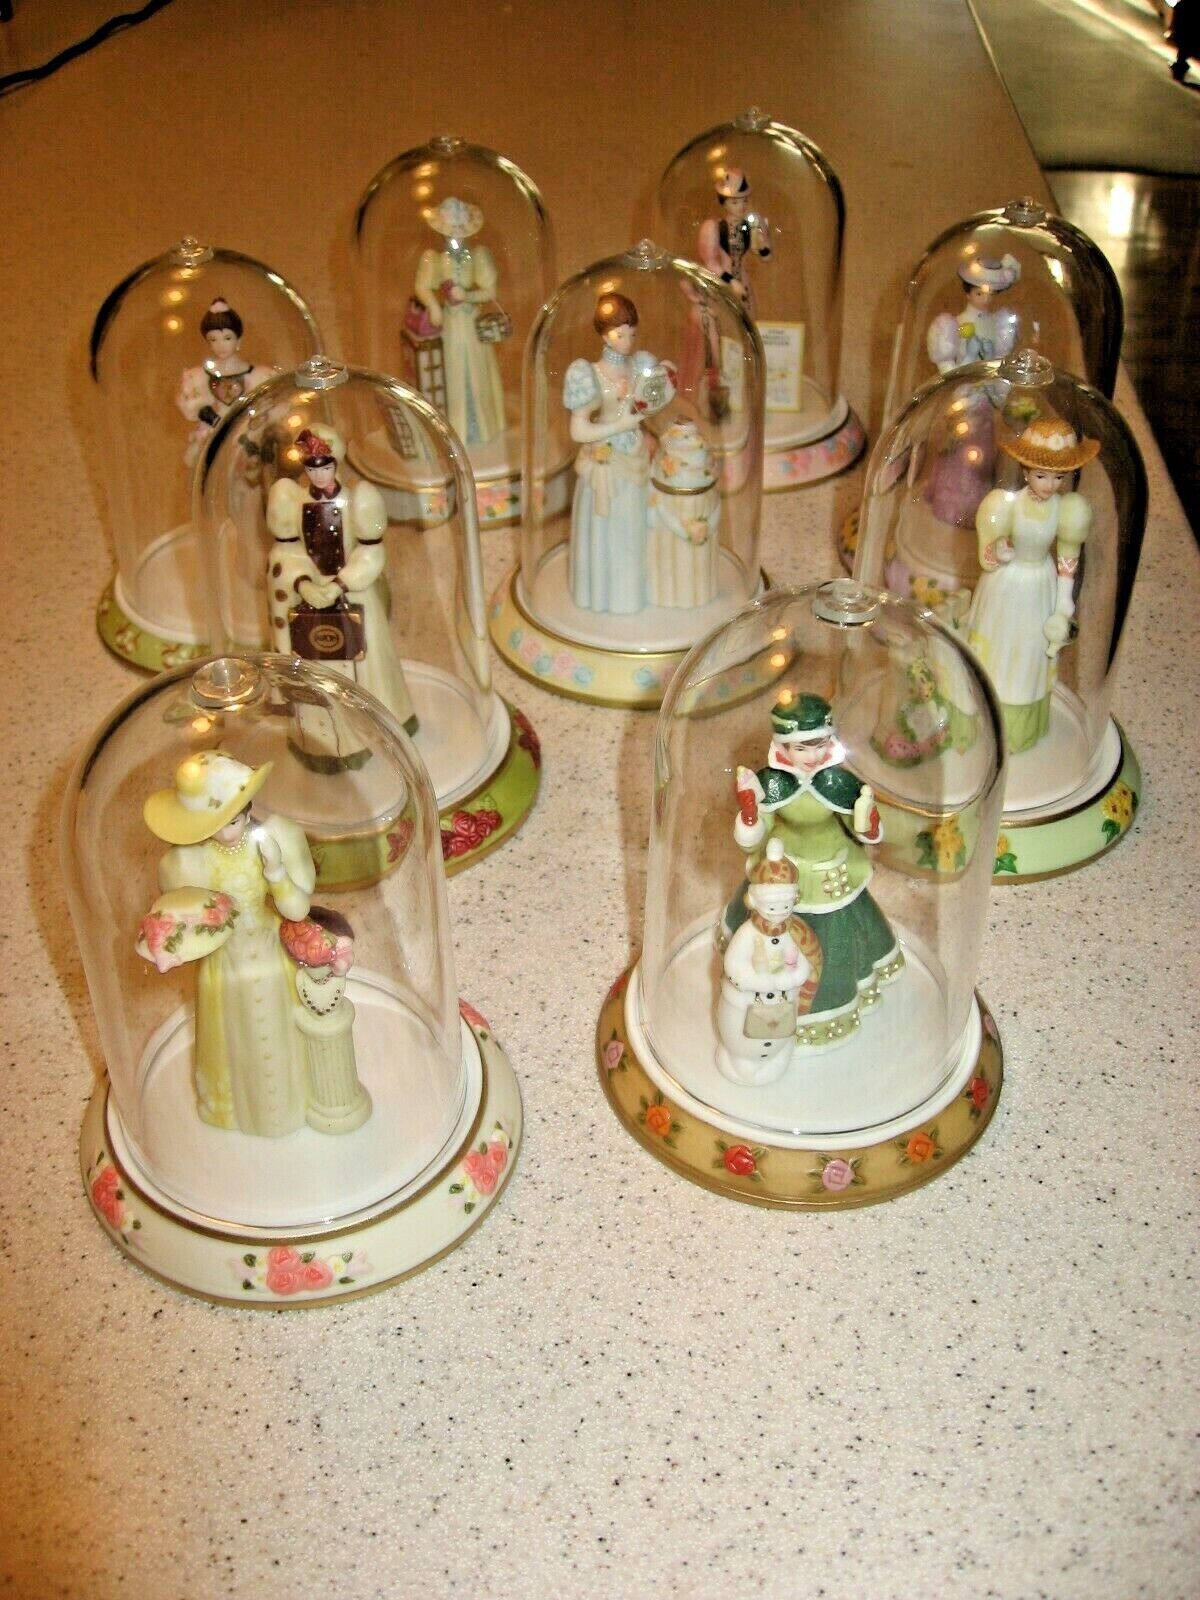 Lot of 9 Avon President's Club Miniature Mrs. PFE Albee Award Figurines 2000-08 Ograniczona WYPRZEDAŻ, WYPRZEDAŻ